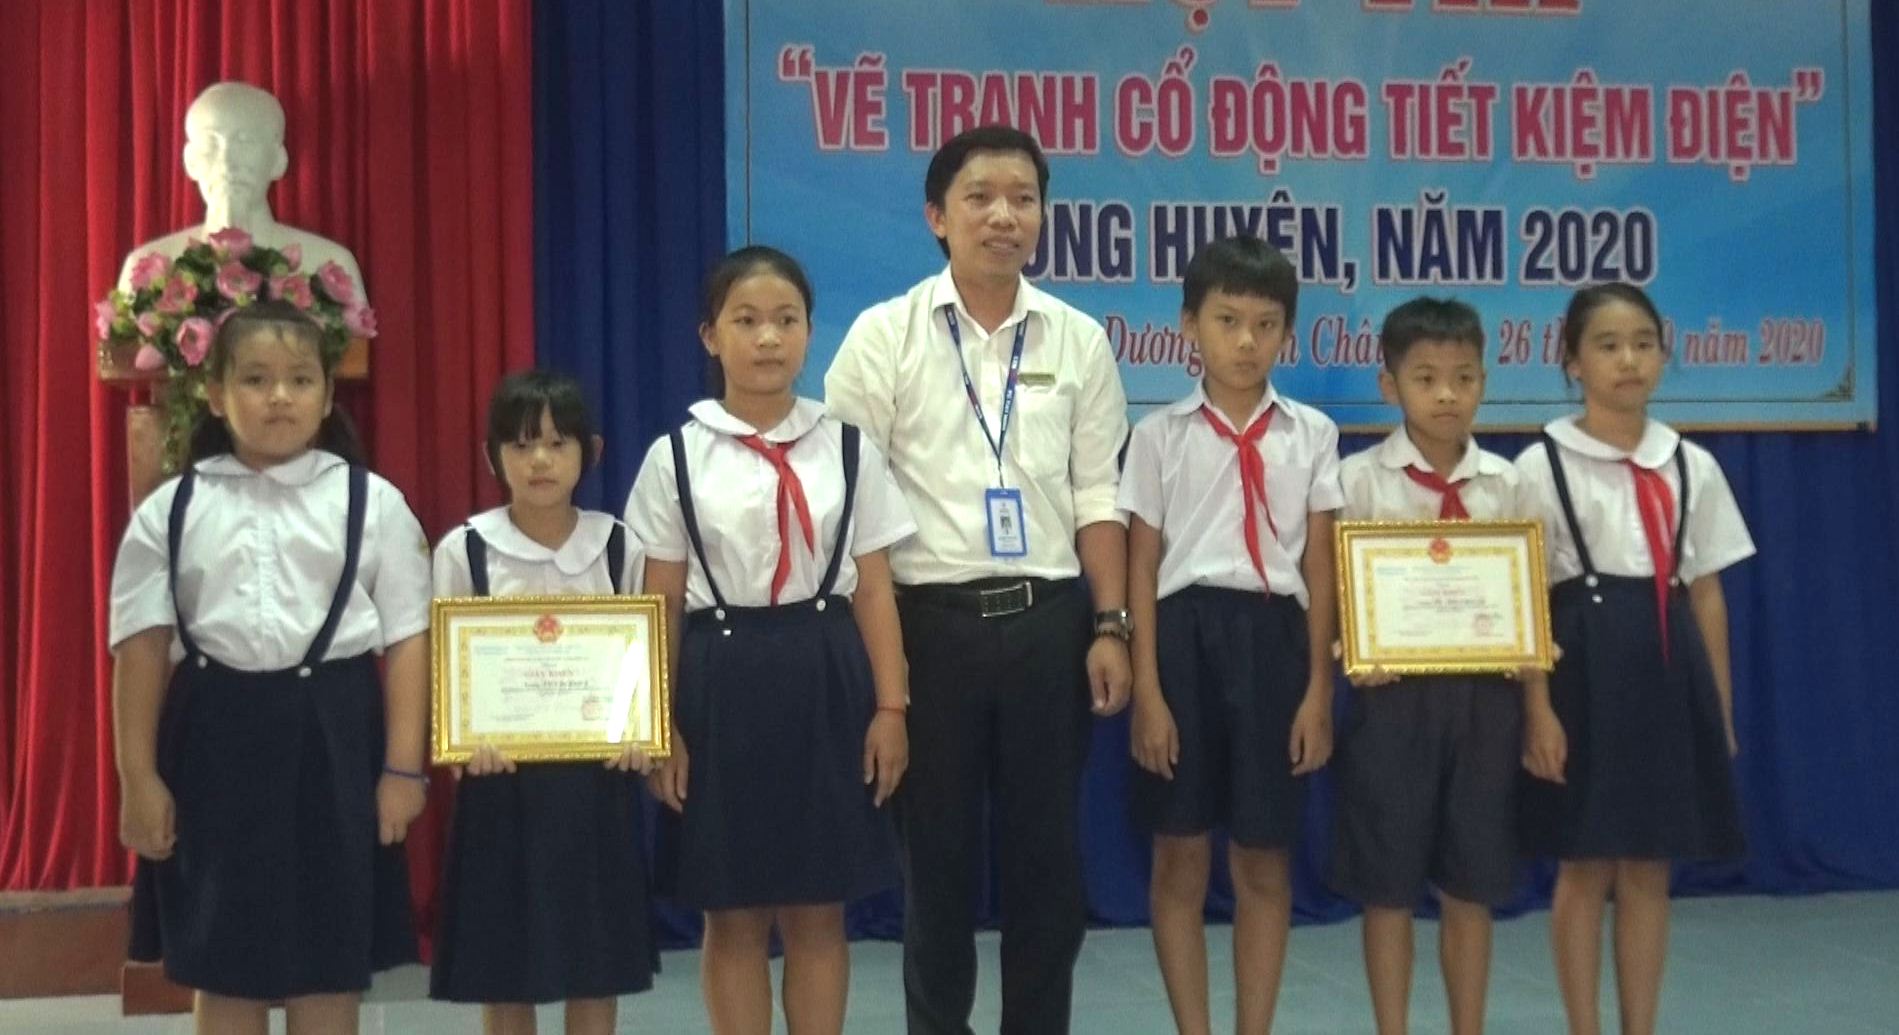 Trường Tiểu học Cầu Khởi B giành giải nhất hội thi “Vẽ tranh cổ động tiết kiệm điện” vòng huyện năm 2020